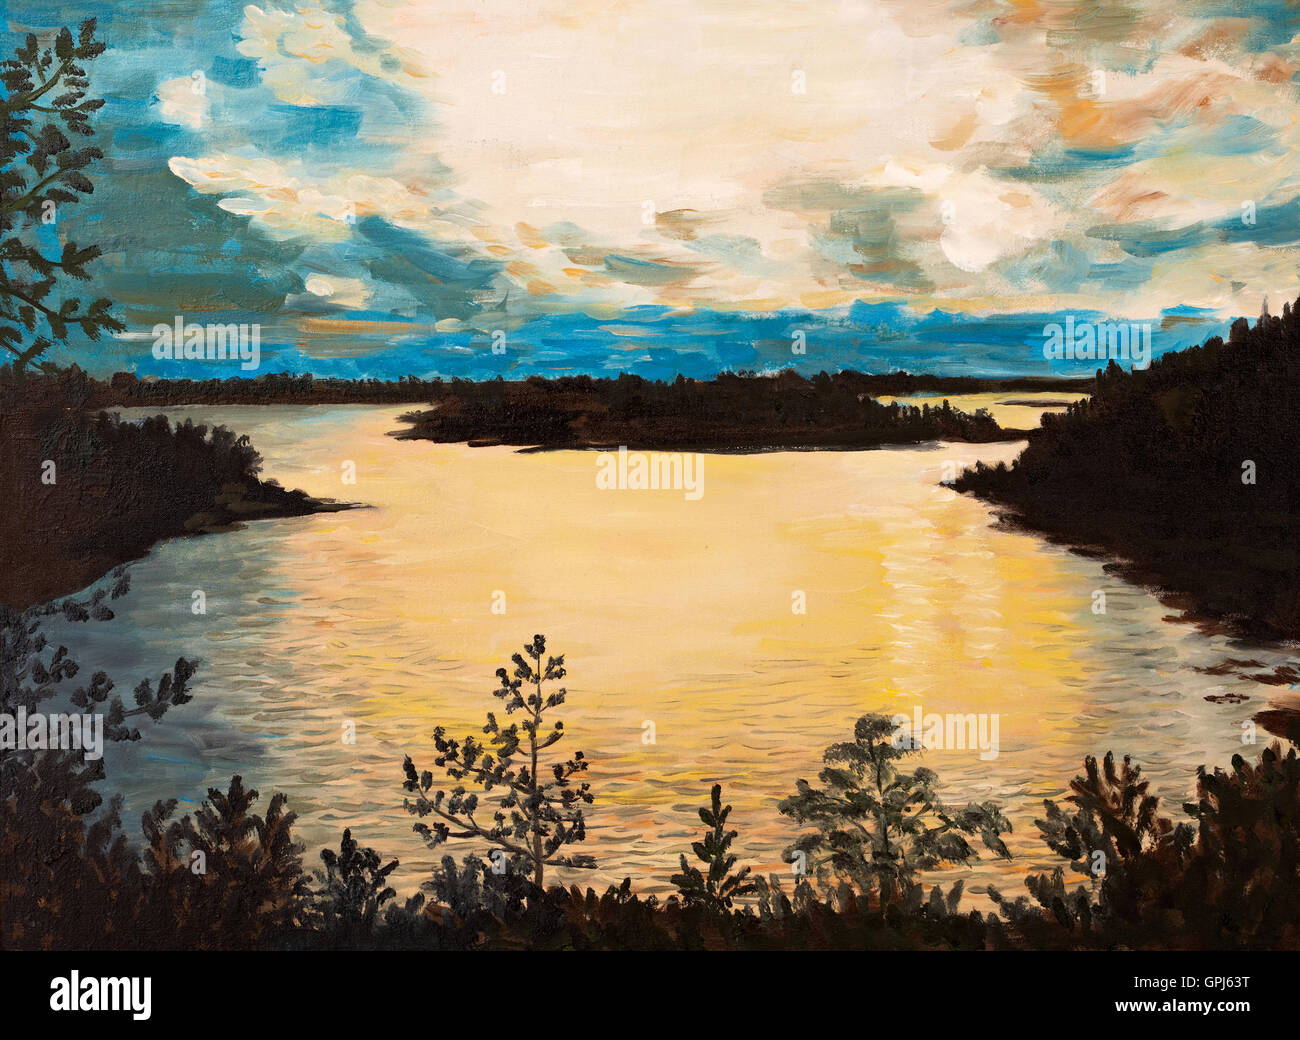 Huile sur toile - coucher de soleil sur le lac, dessin abstrait, réalisée dans le style de l'Impressionnisme, l'automne, l'arrière-plan Banque D'Images